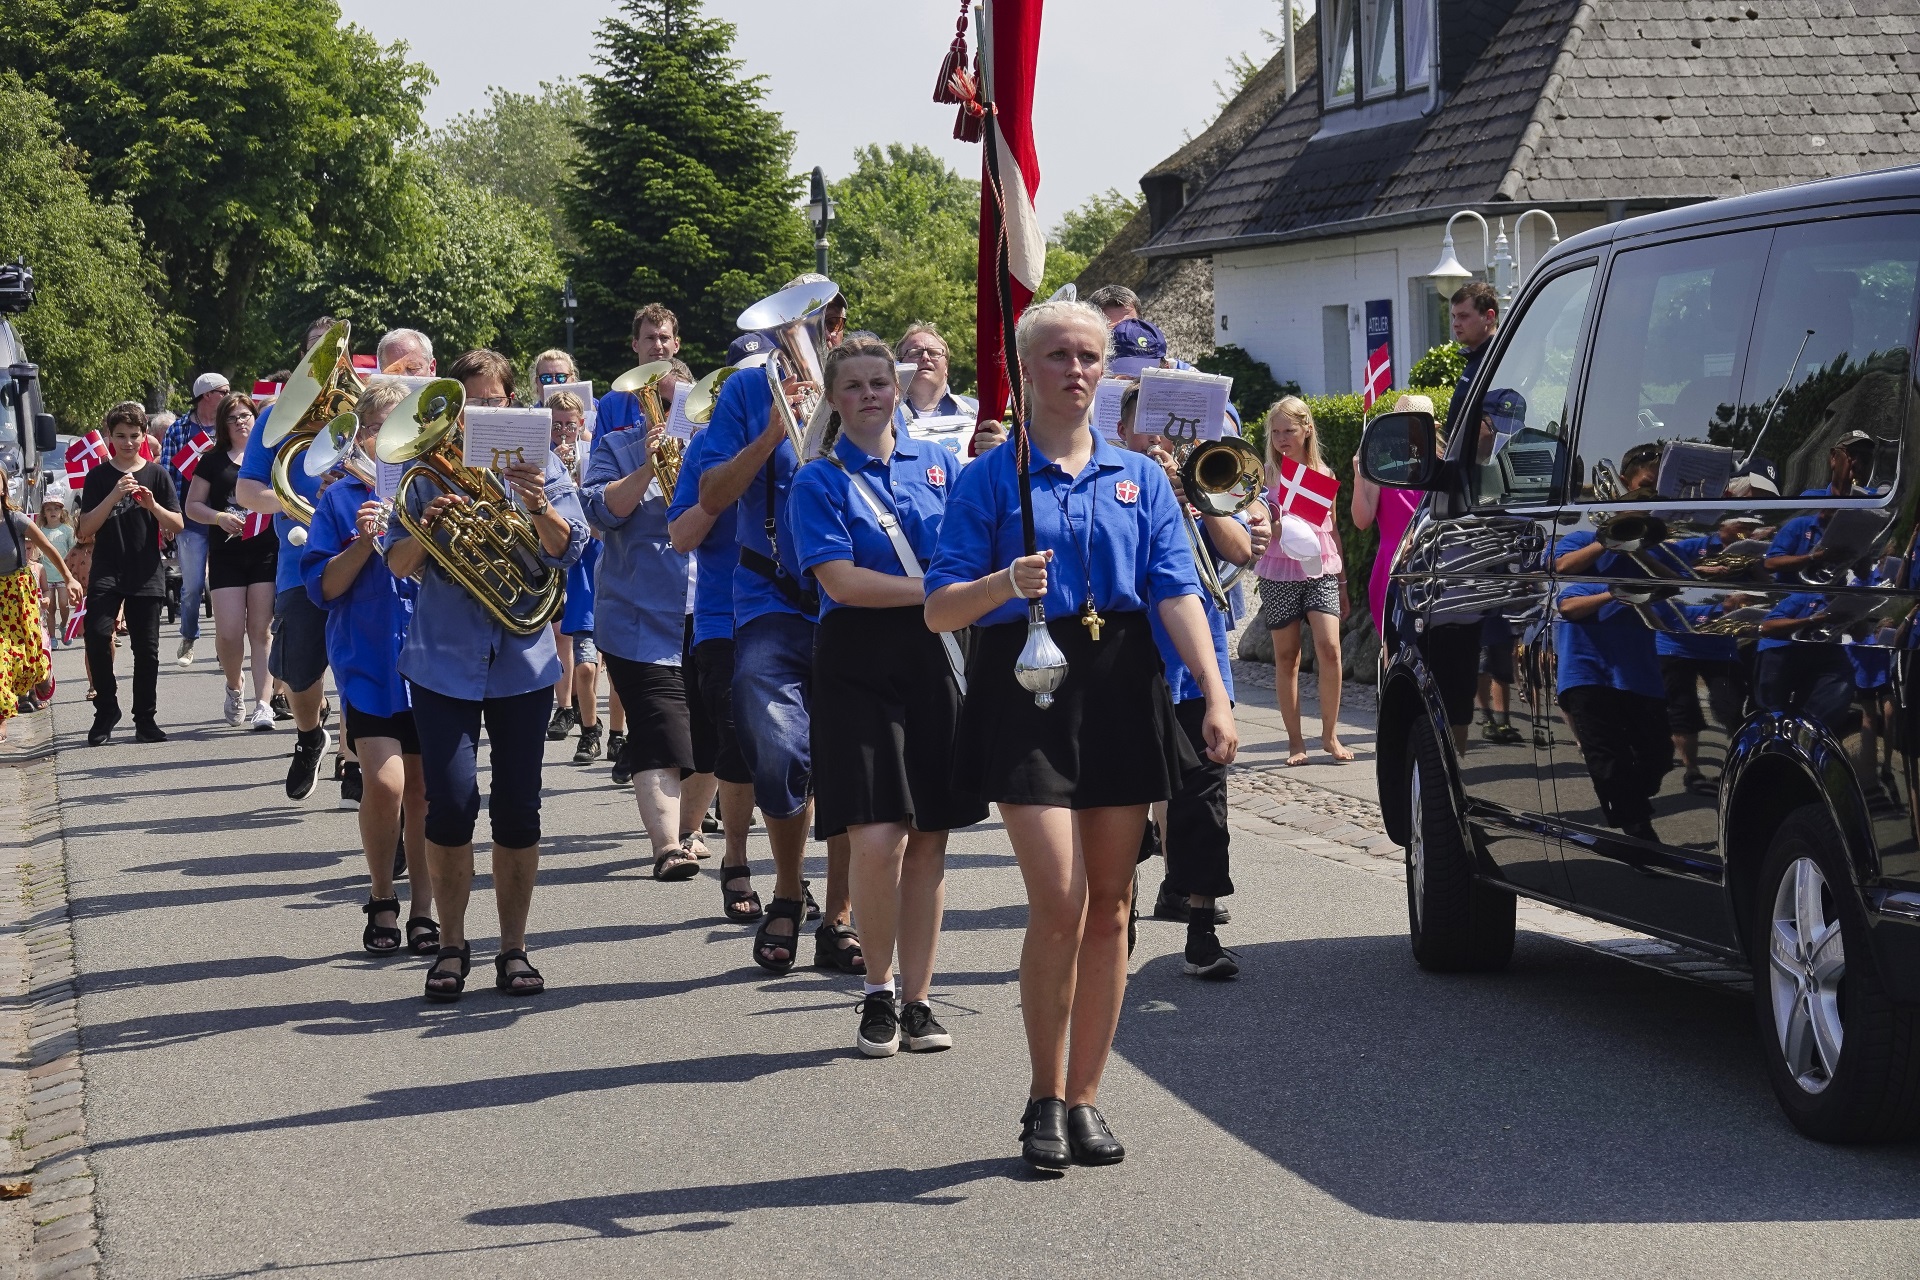 tnder-brass-band-sylt-2019.jpg > ”Årsmøde 2019” dänische Minderheit feiert in Keitum auf Sylt > uhr, halle, dänischen, eröffnung, kinder, apenrade